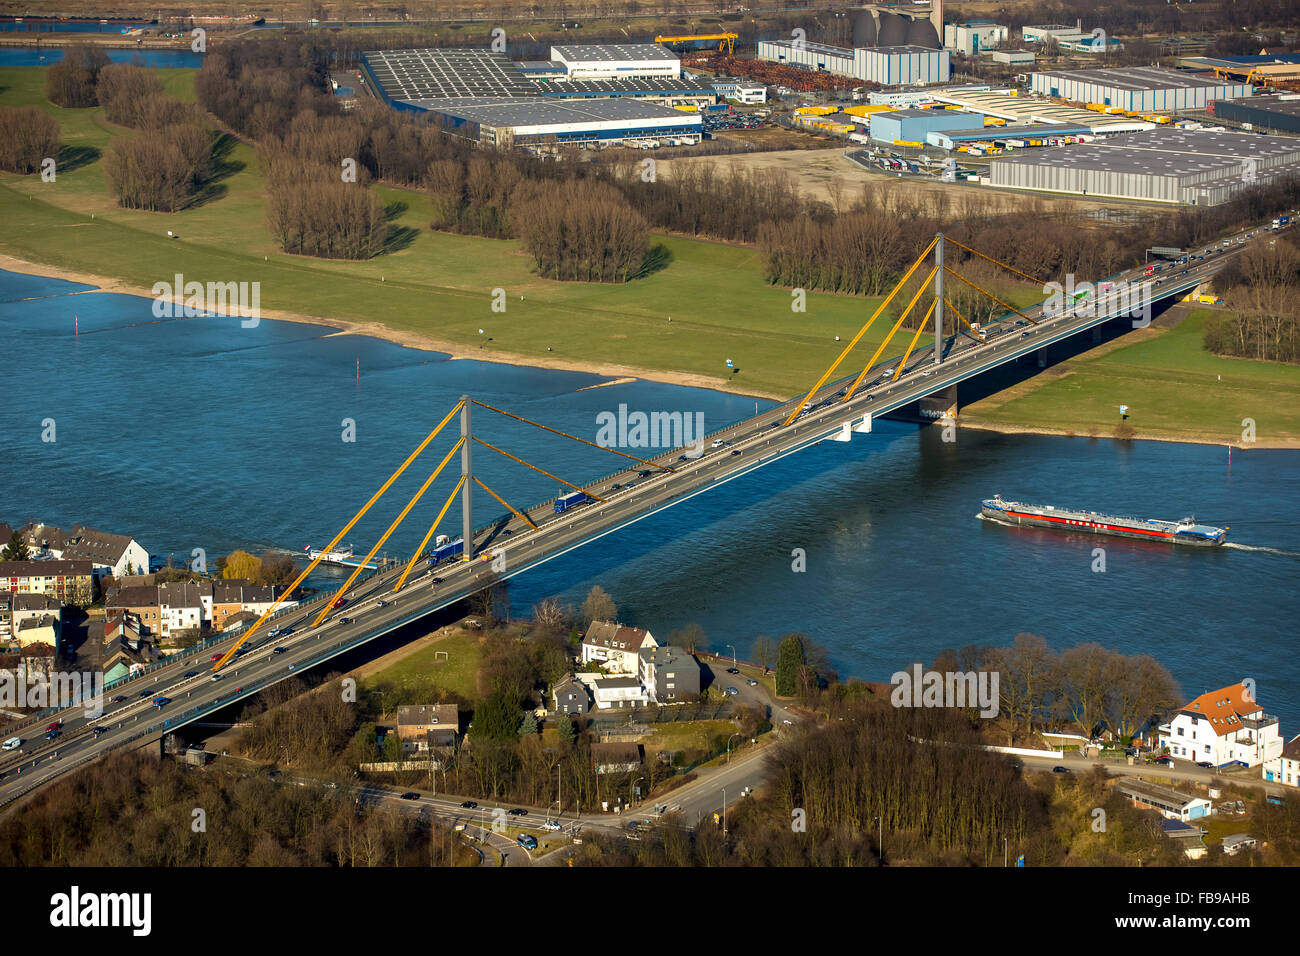 Vista aérea, atasco en la A40 Puente, Puente del Rin, cerrada al tráfico pesado, el puente de daños y daños en el puente, Duisburg, área de Ruhr, Foto de stock